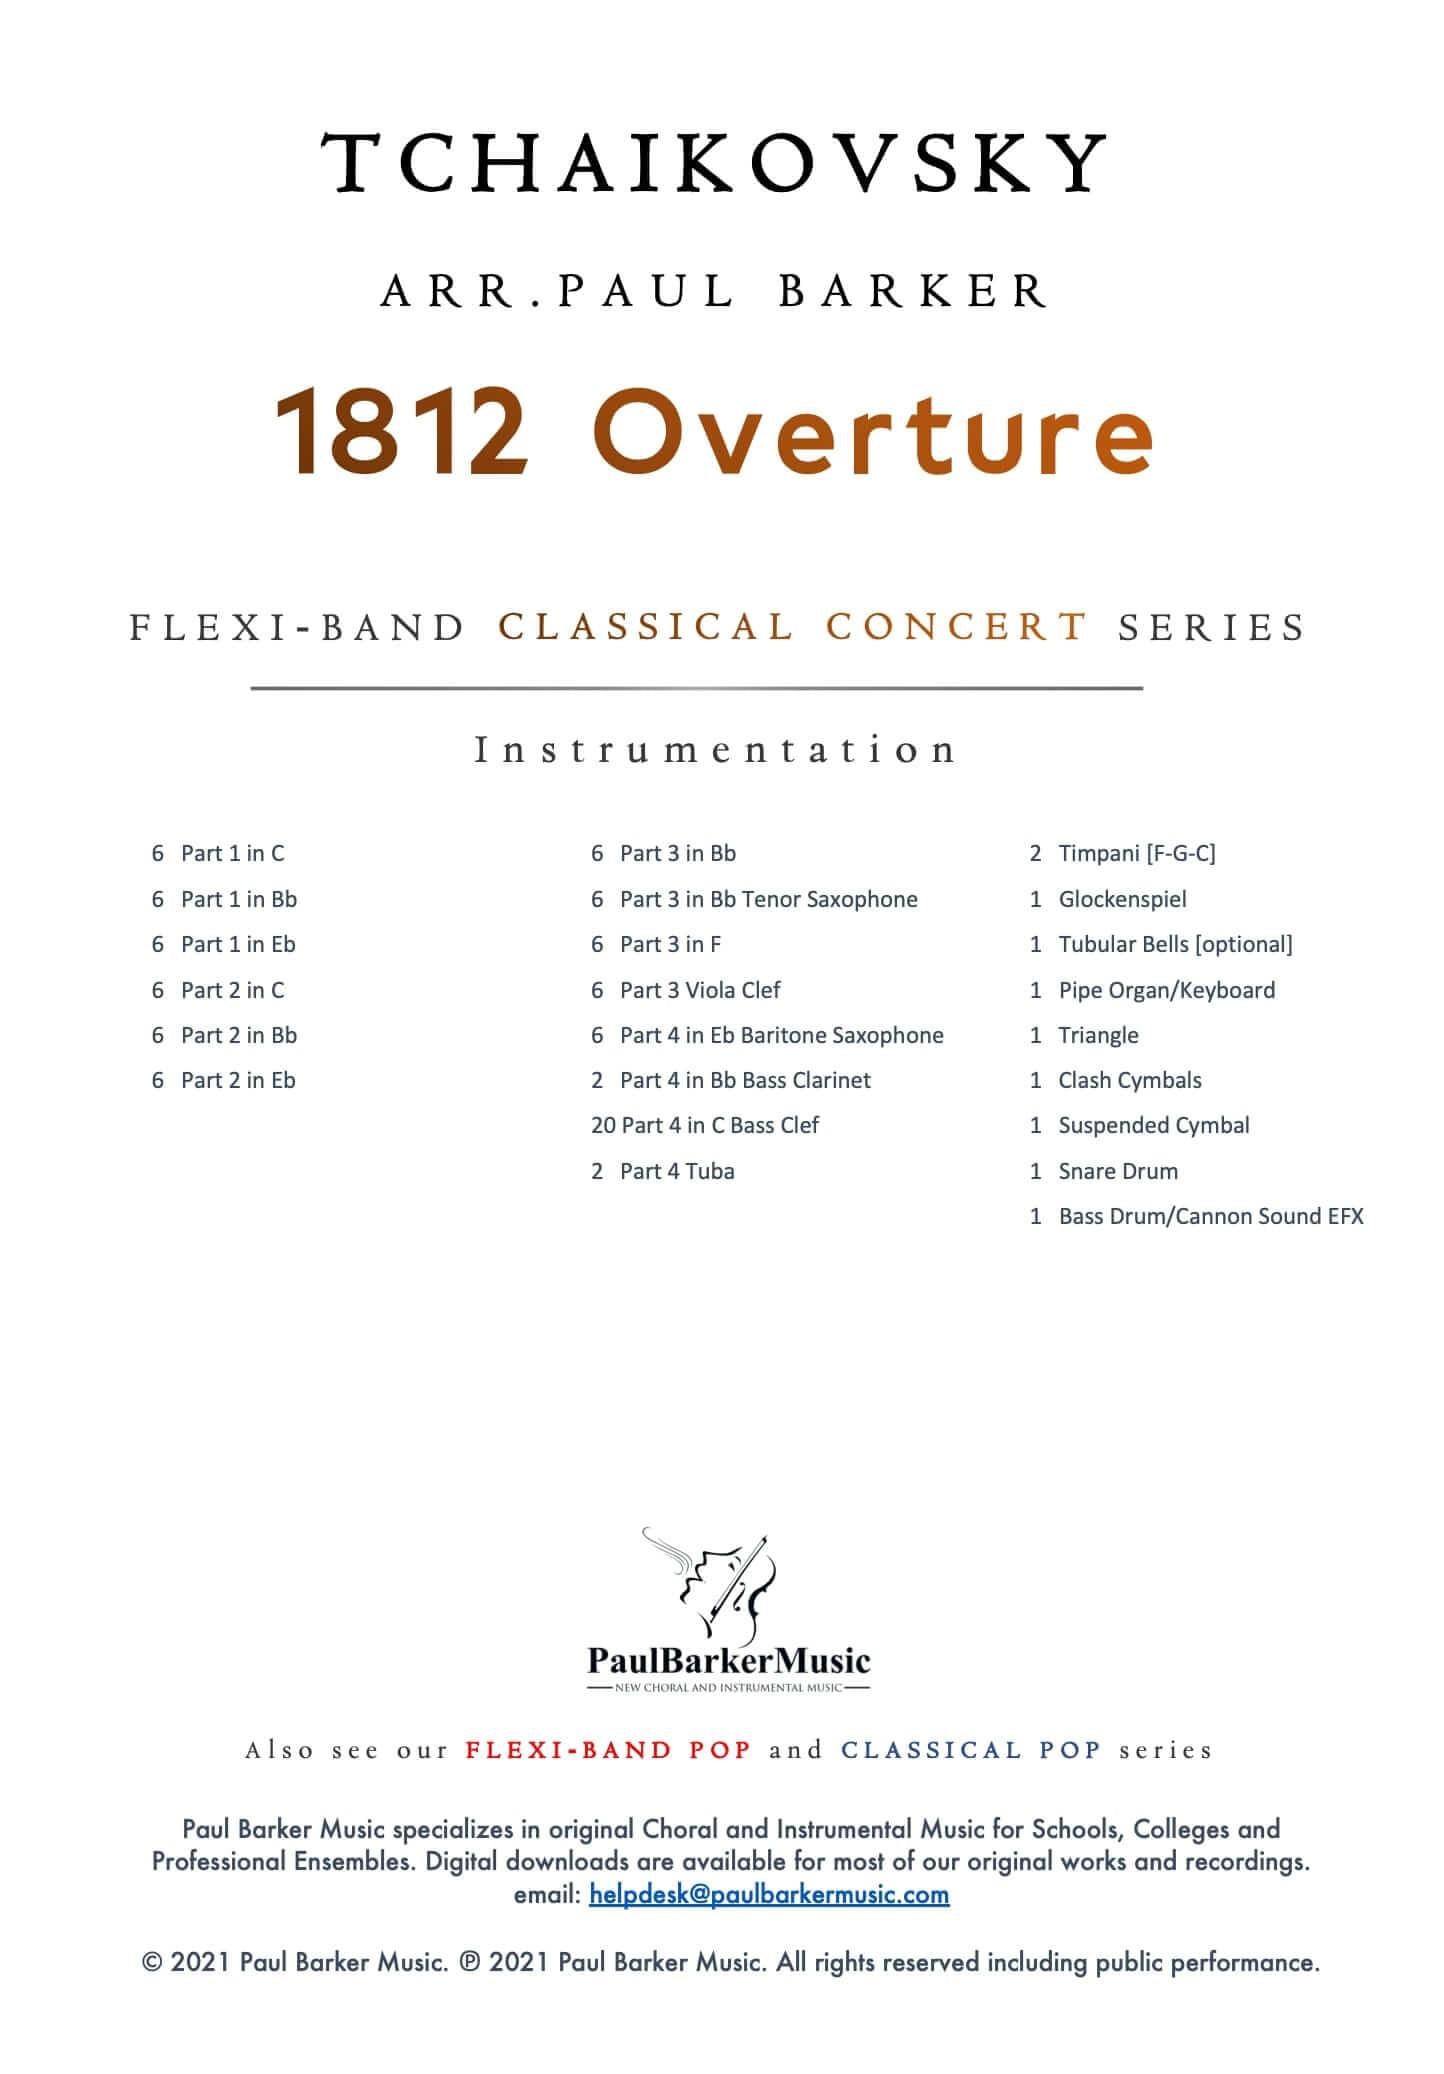 1812 Overture: Viola: Viola Part - Digital Sheet Music Download